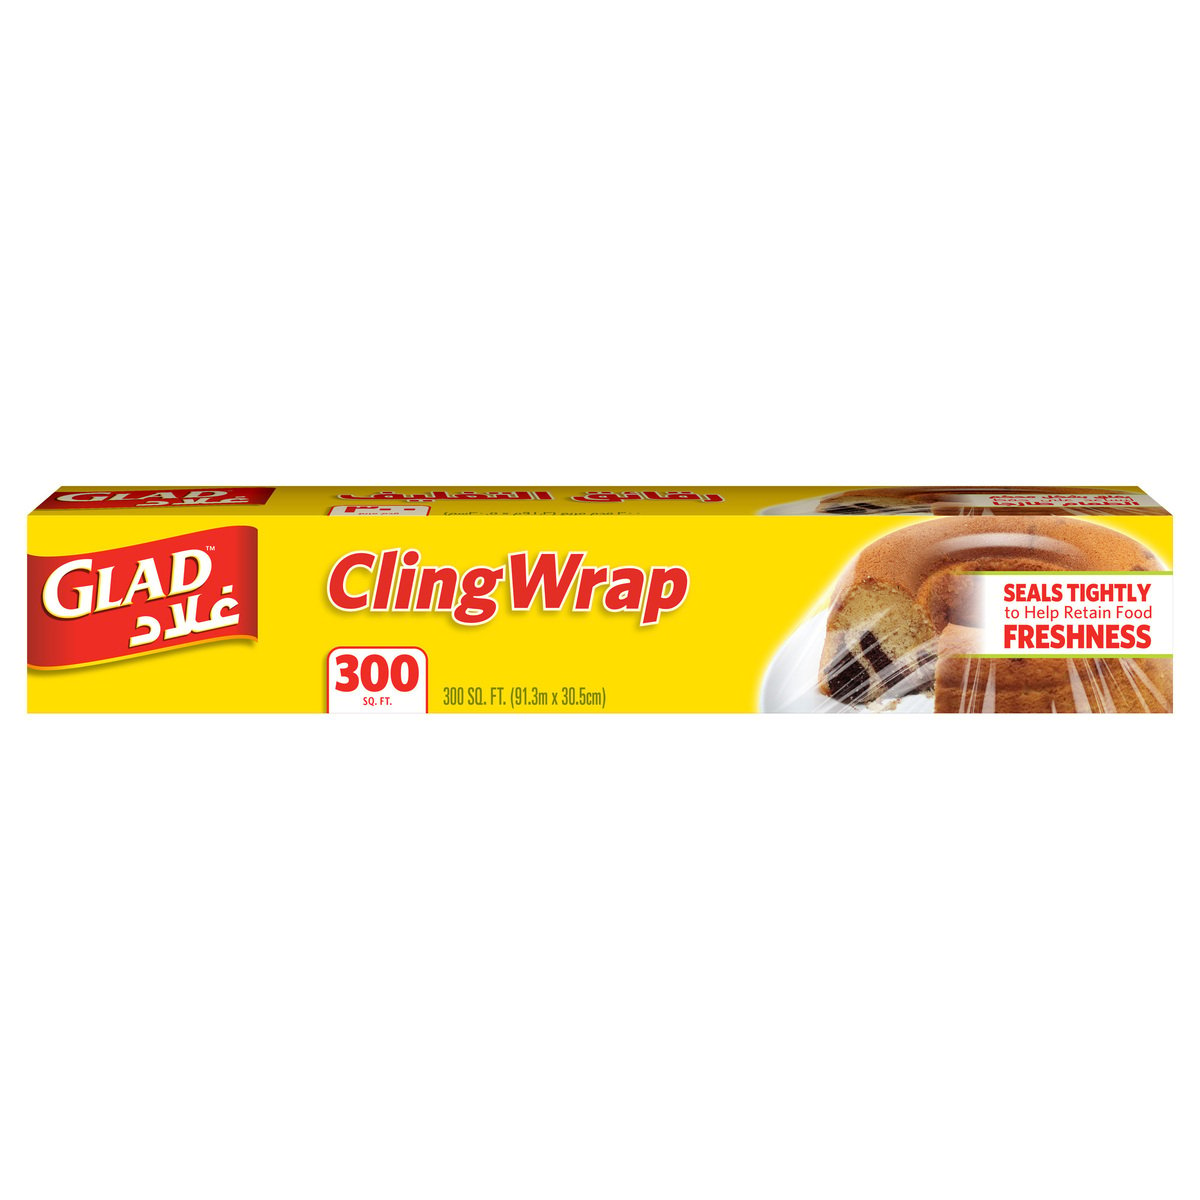 Glad Cling Wrap Plastic Wrap 300 sq. ft. Size 91.3m x 30.5cm 1pc